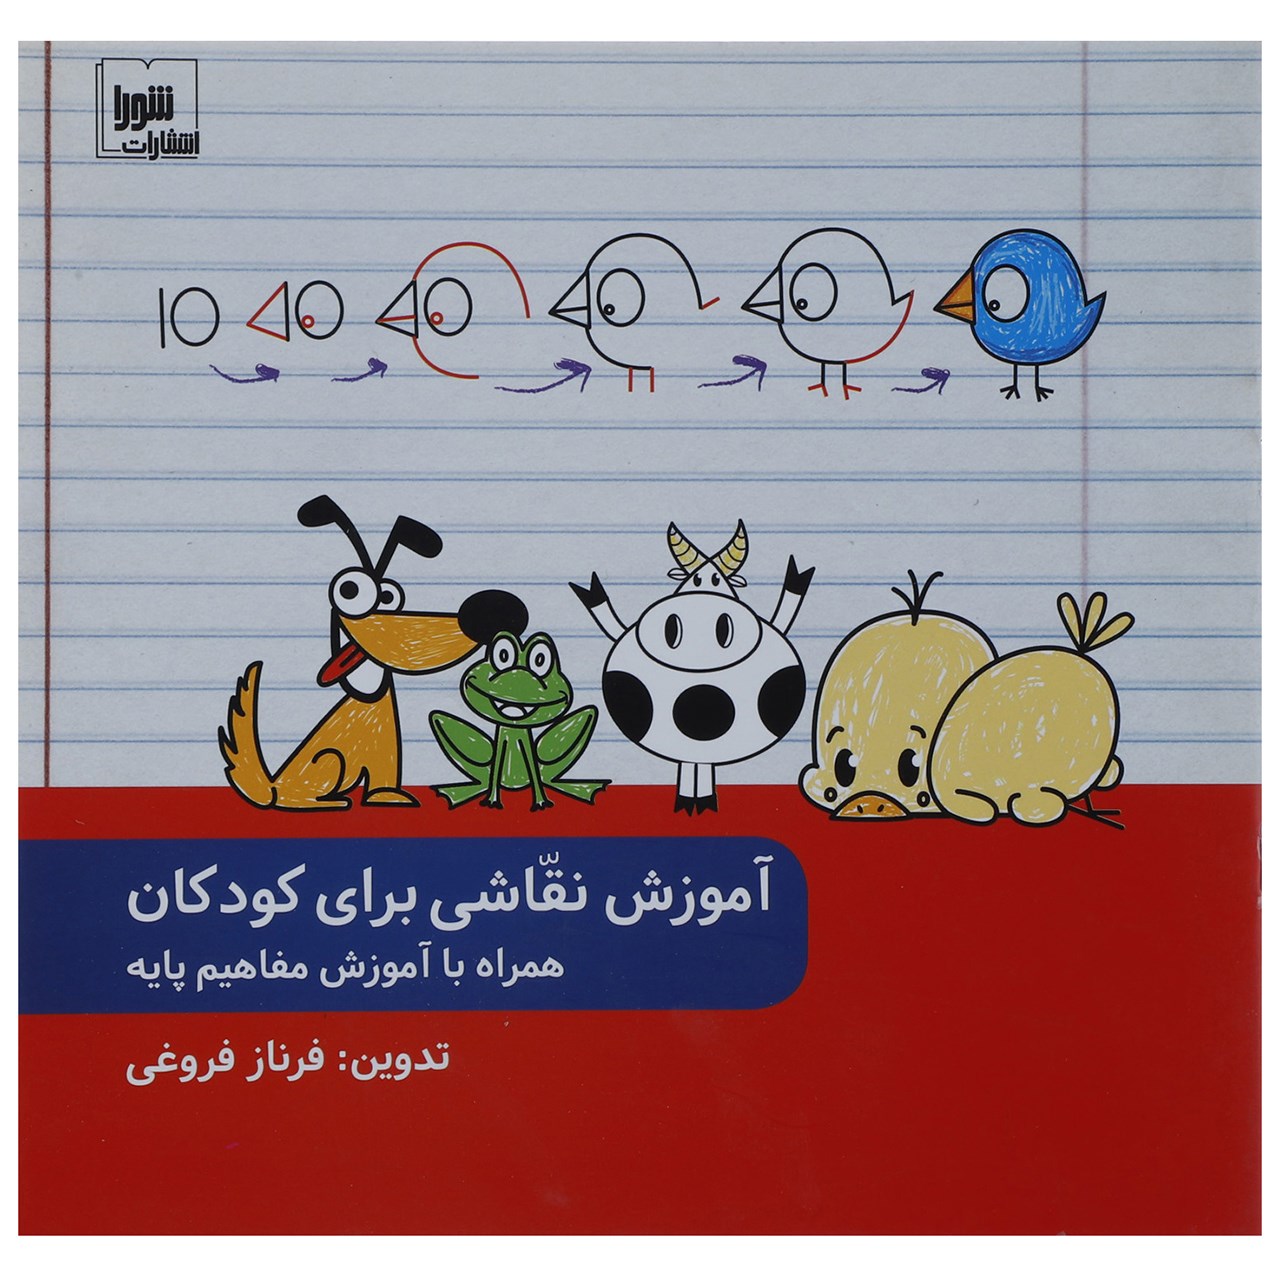 کتاب آموزش نقاشی برای کودکان همراه با آموزش مفاهیم پایه اثر فرناز فروغی